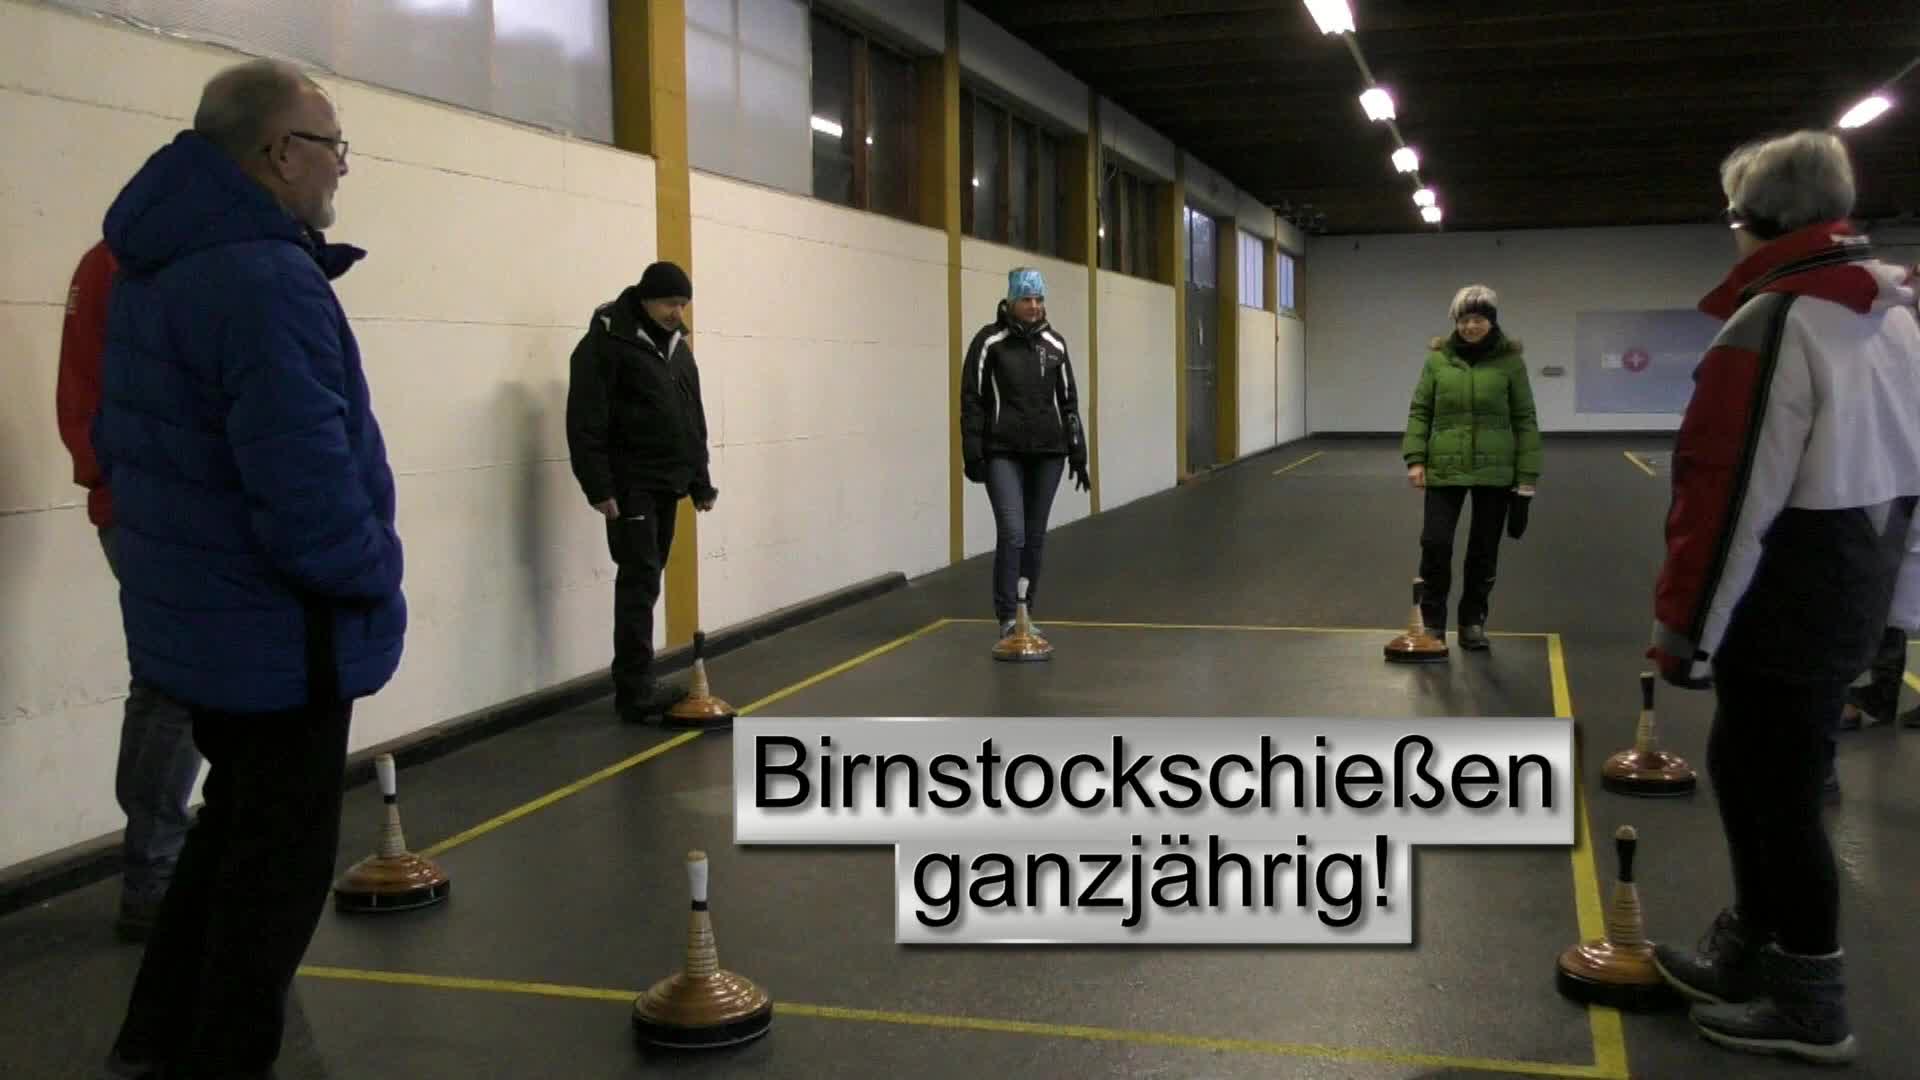 Birnstockschießen ganzjährig in Schweinbach!